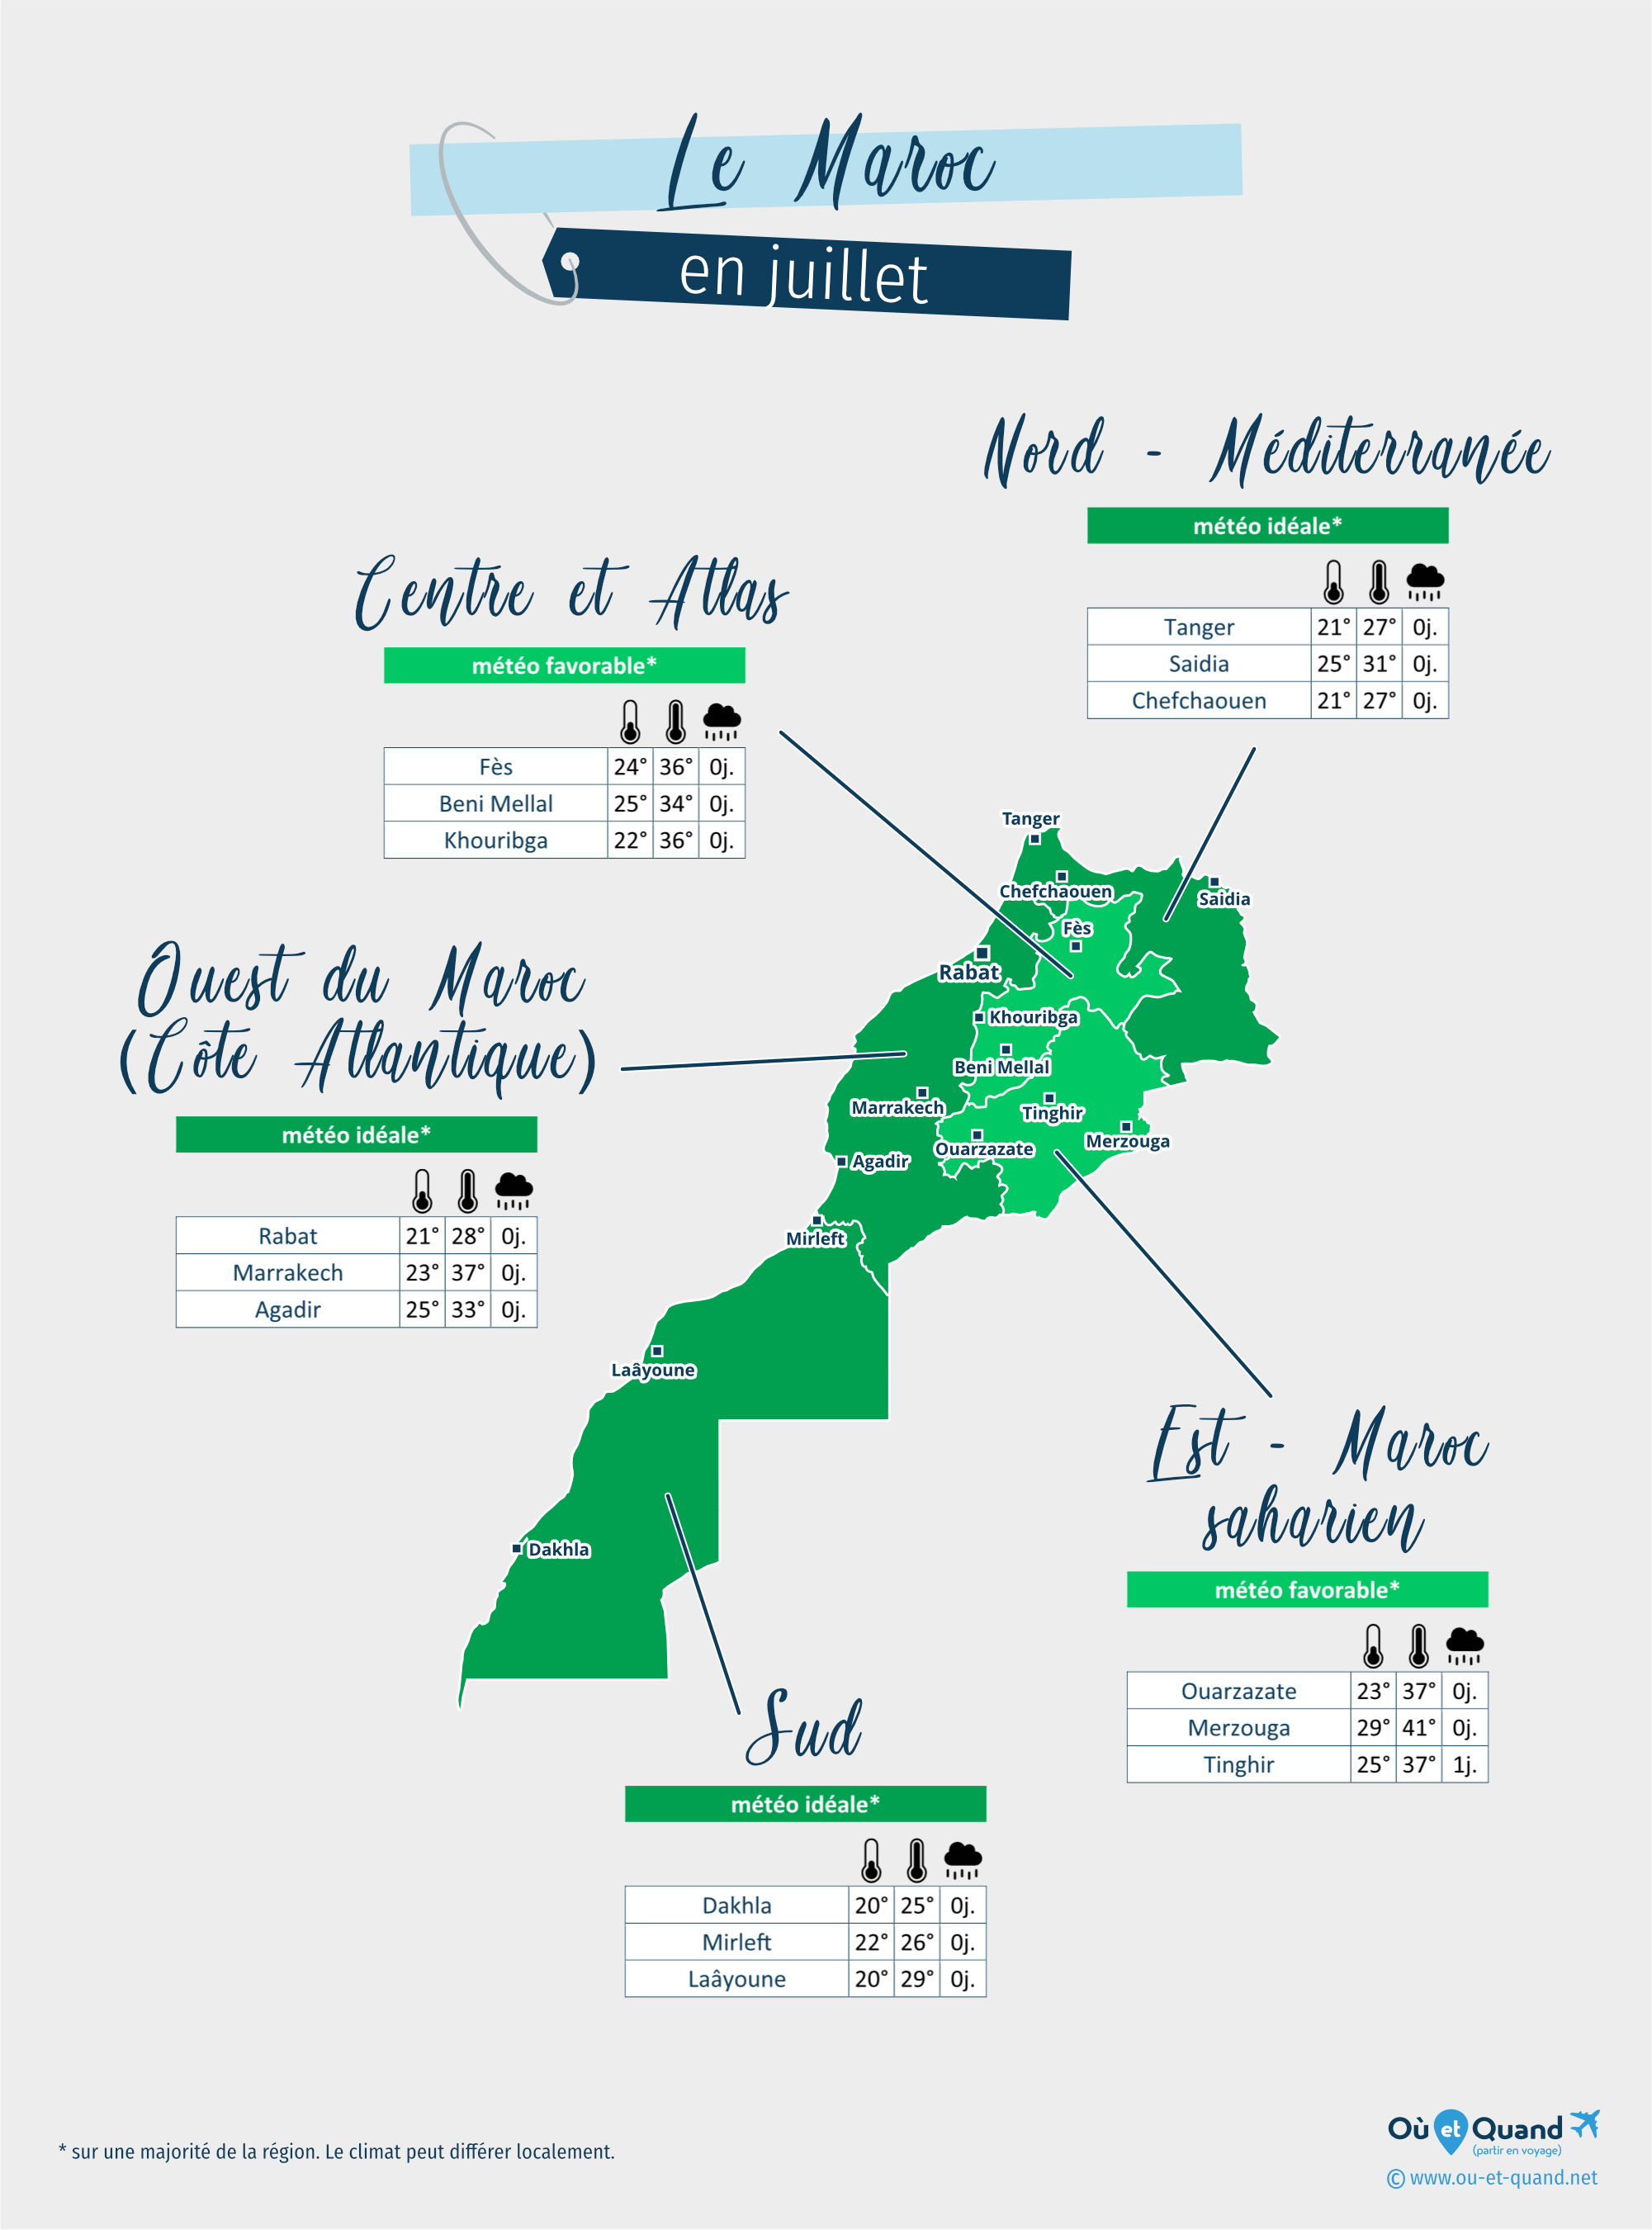 Carte de la météo en juillet dans les régions du Maroc